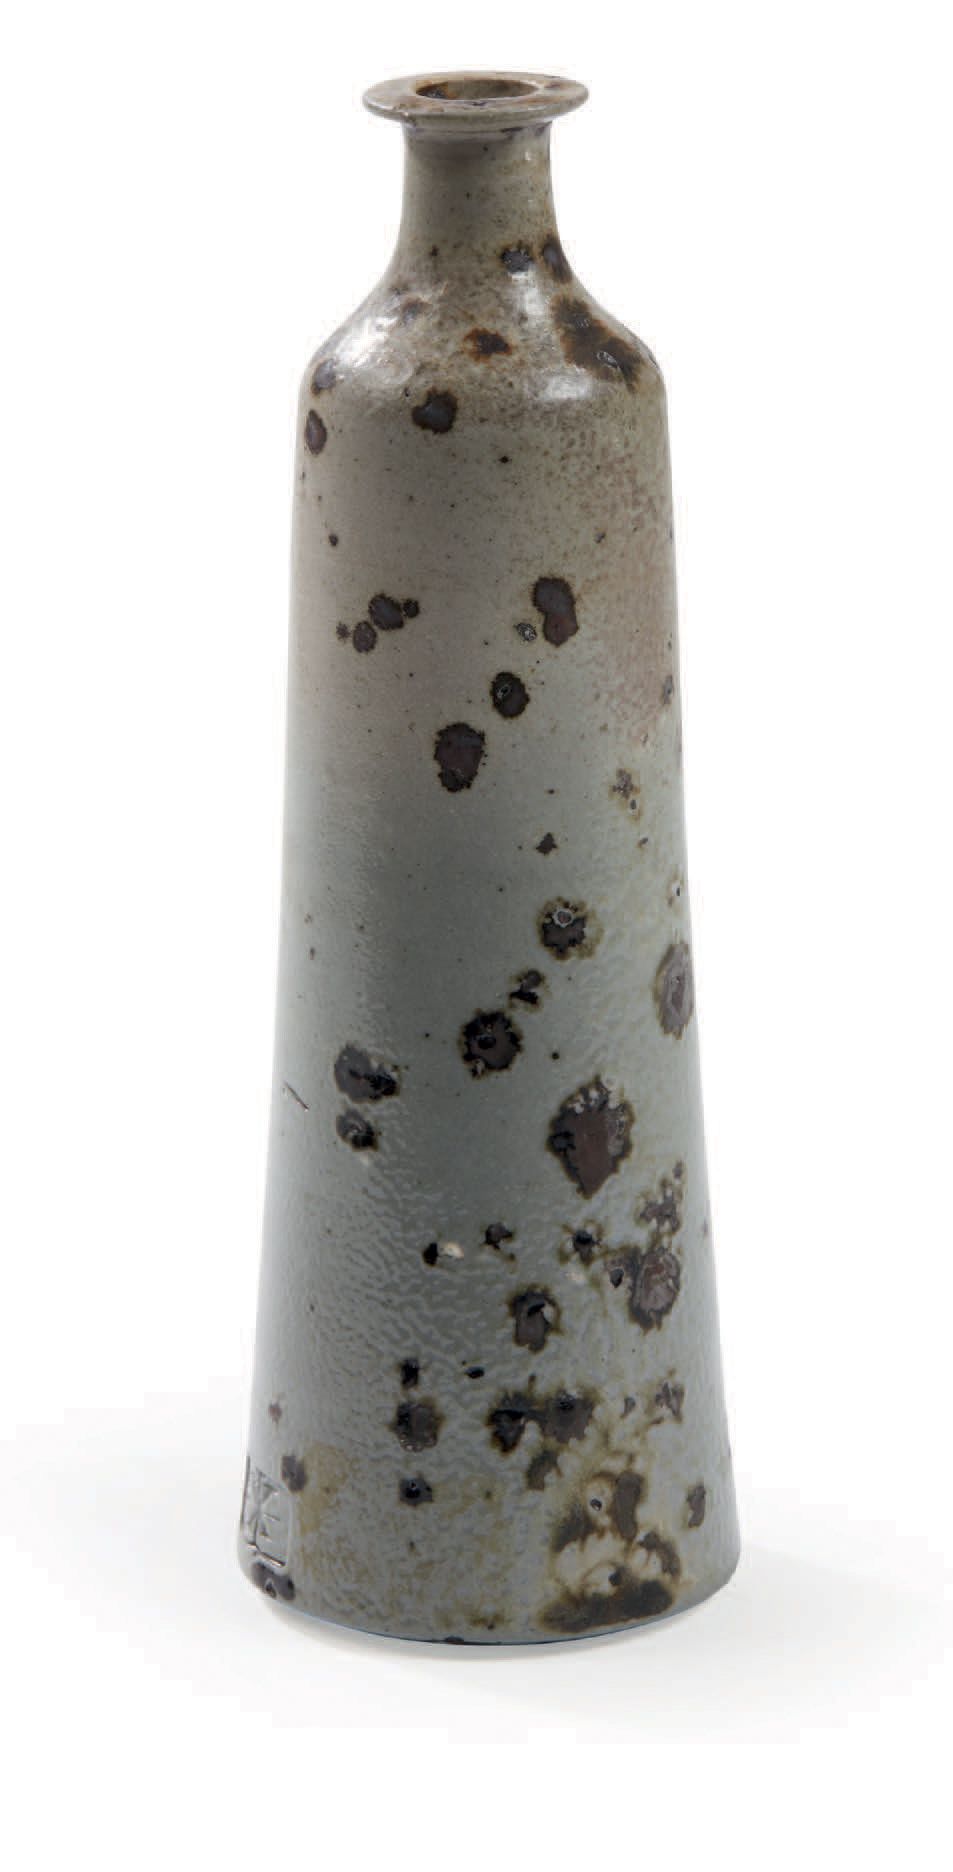 Robert DEBLANDER (1924-2010) 
Stoneware soliflore vase
Signed
H : 20,5 cm